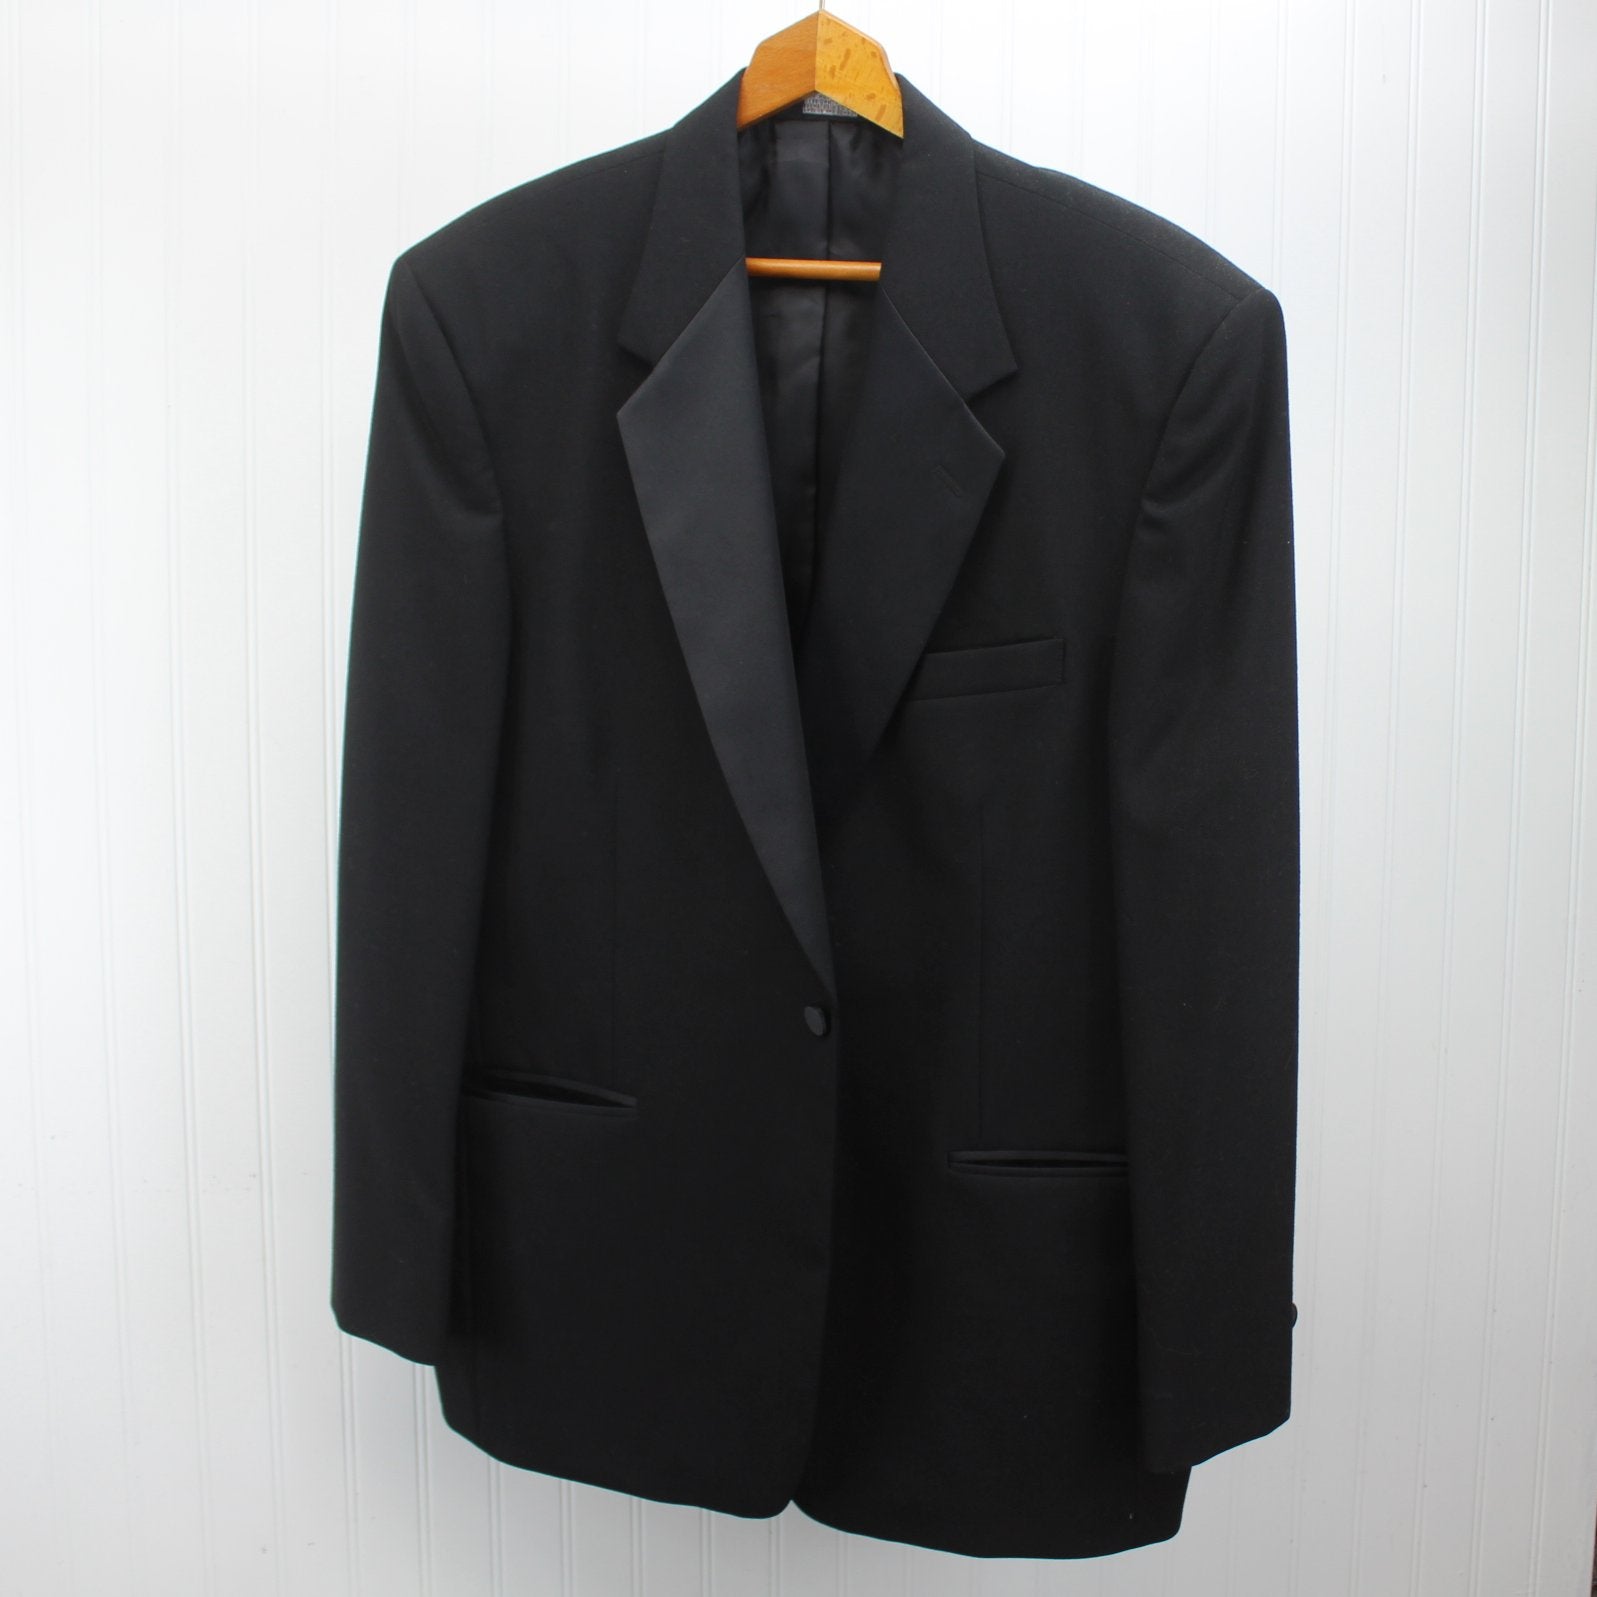 Perry Ellis Evening Suit Formal Men's Black Wool 3 Piece Satin Lapel Trim Print Vest 44R jacket